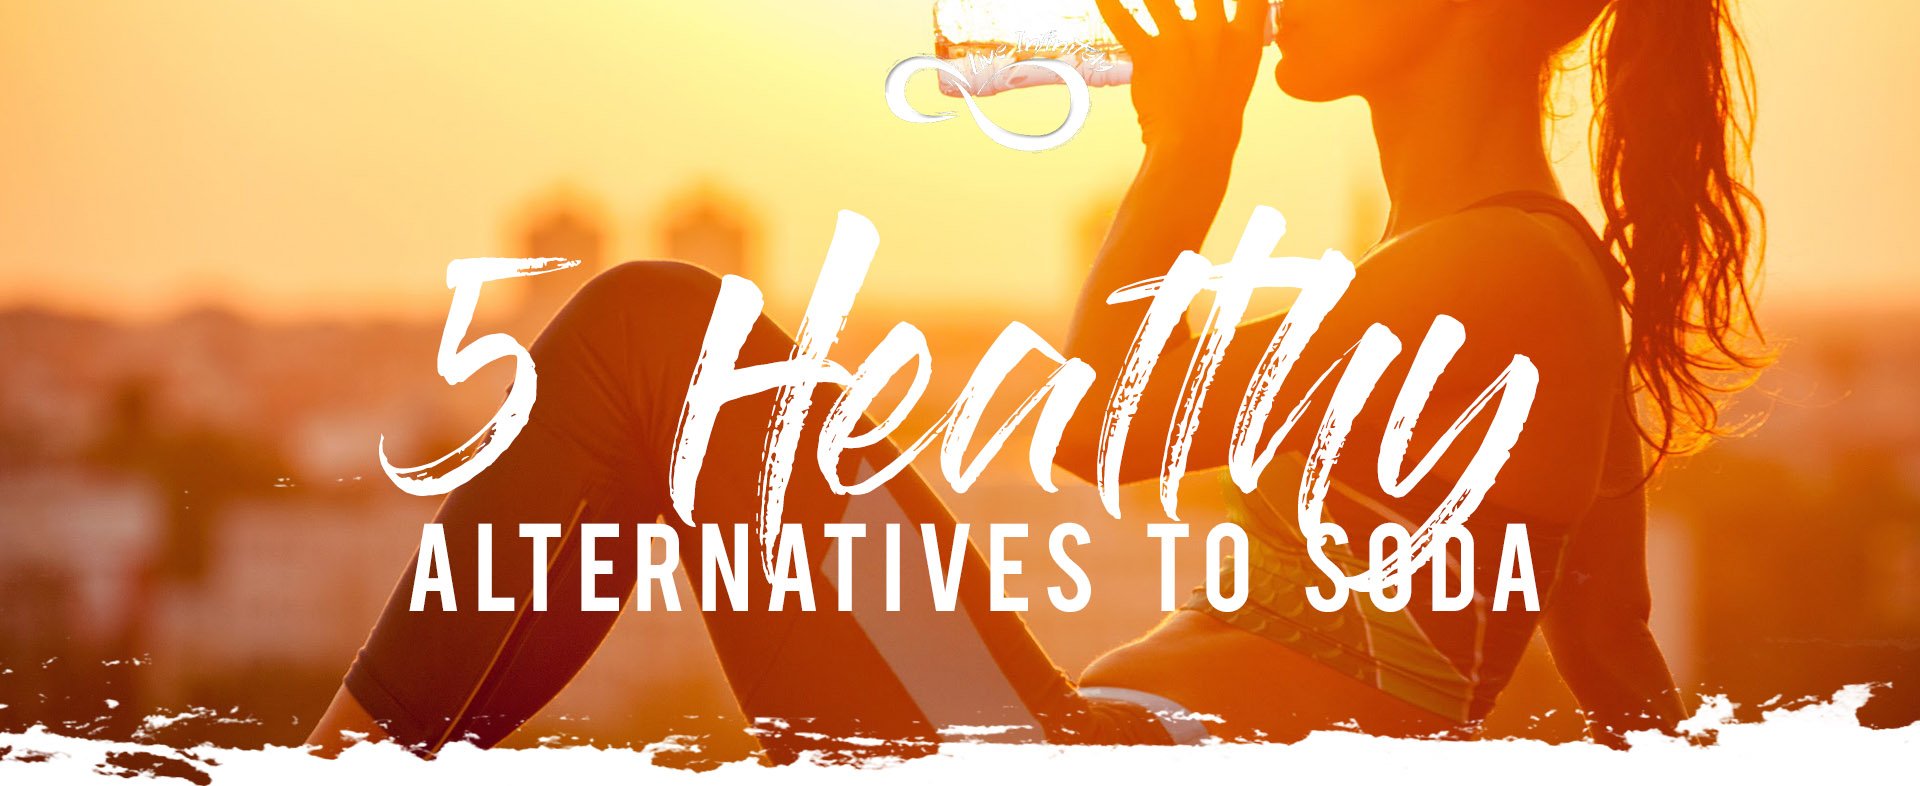 5 Healthy Alternatives to Soda